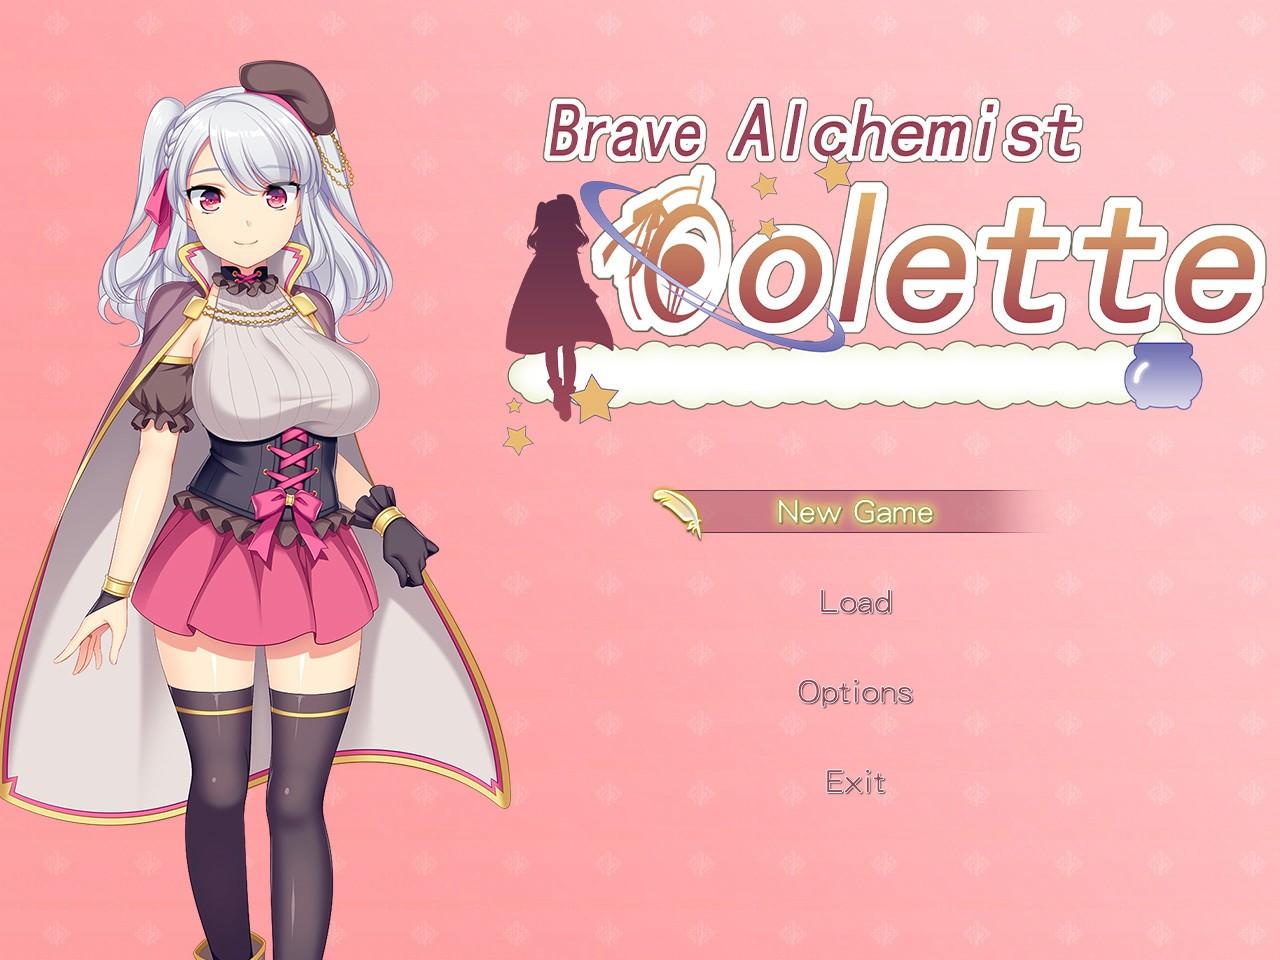 Brave Alchemist Colette Steam Altergift 30.17$